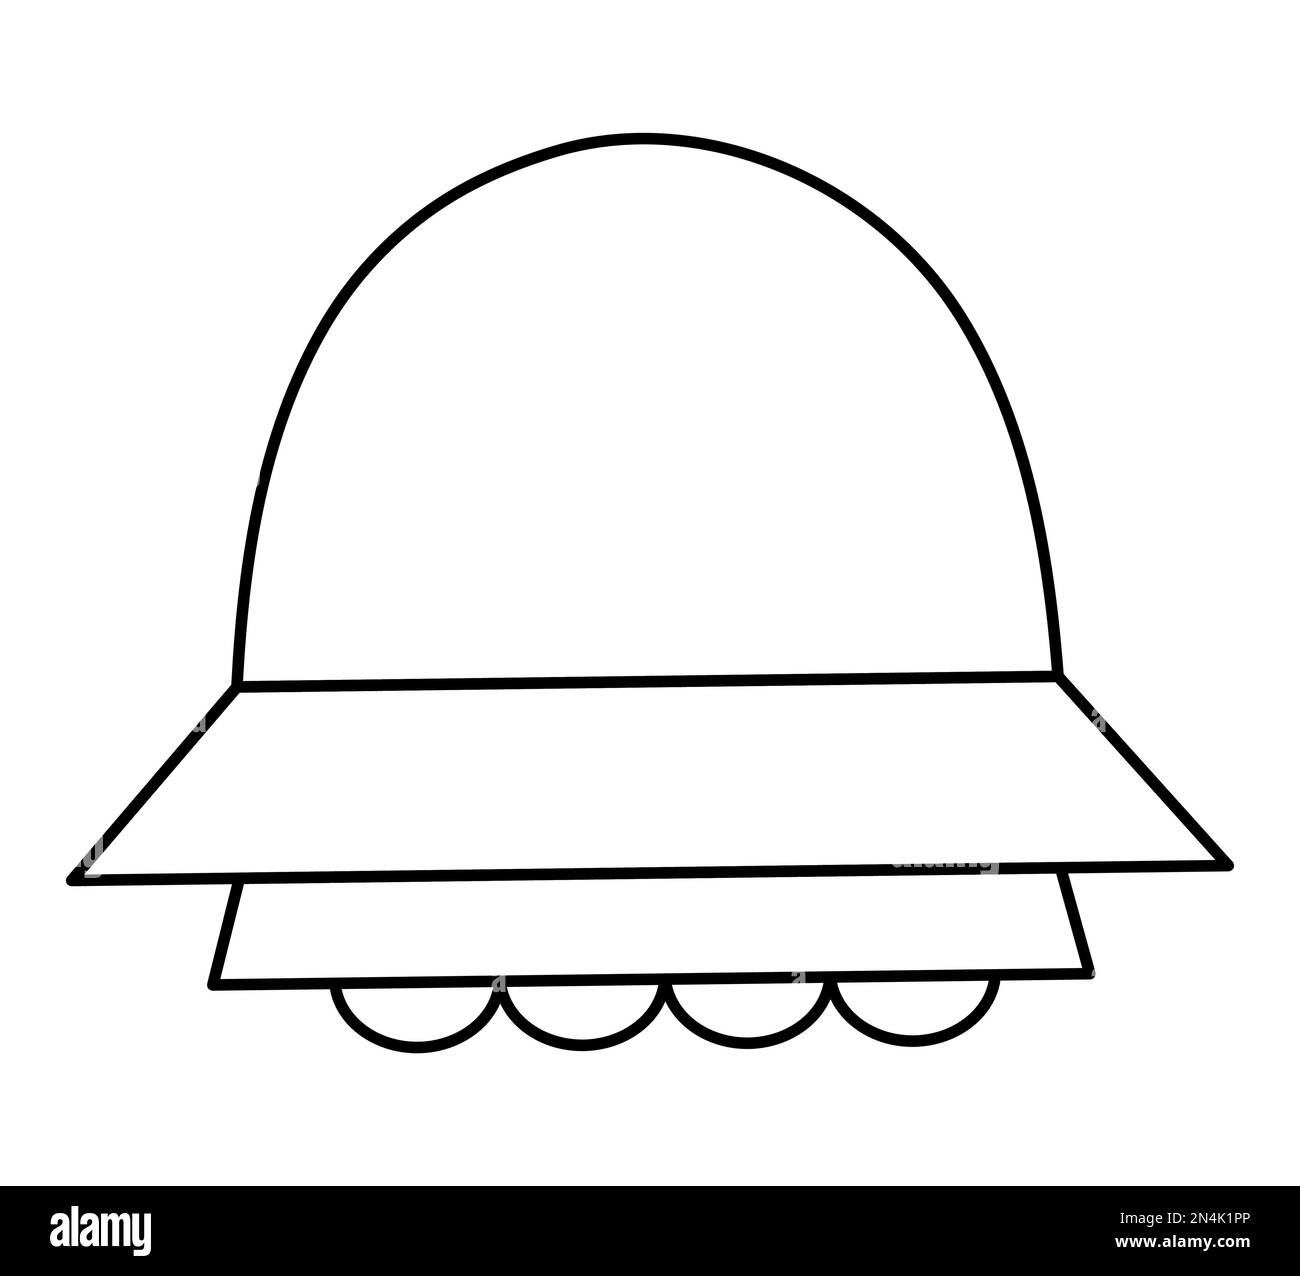 Vektor-Schwarz-Weiß-UFO-Illustration für Kinder. Umriss Symbol für fliegende Untertasse isoliert auf weißem Hintergrund. Weltraumausmalseite für Kinder Stock Vektor